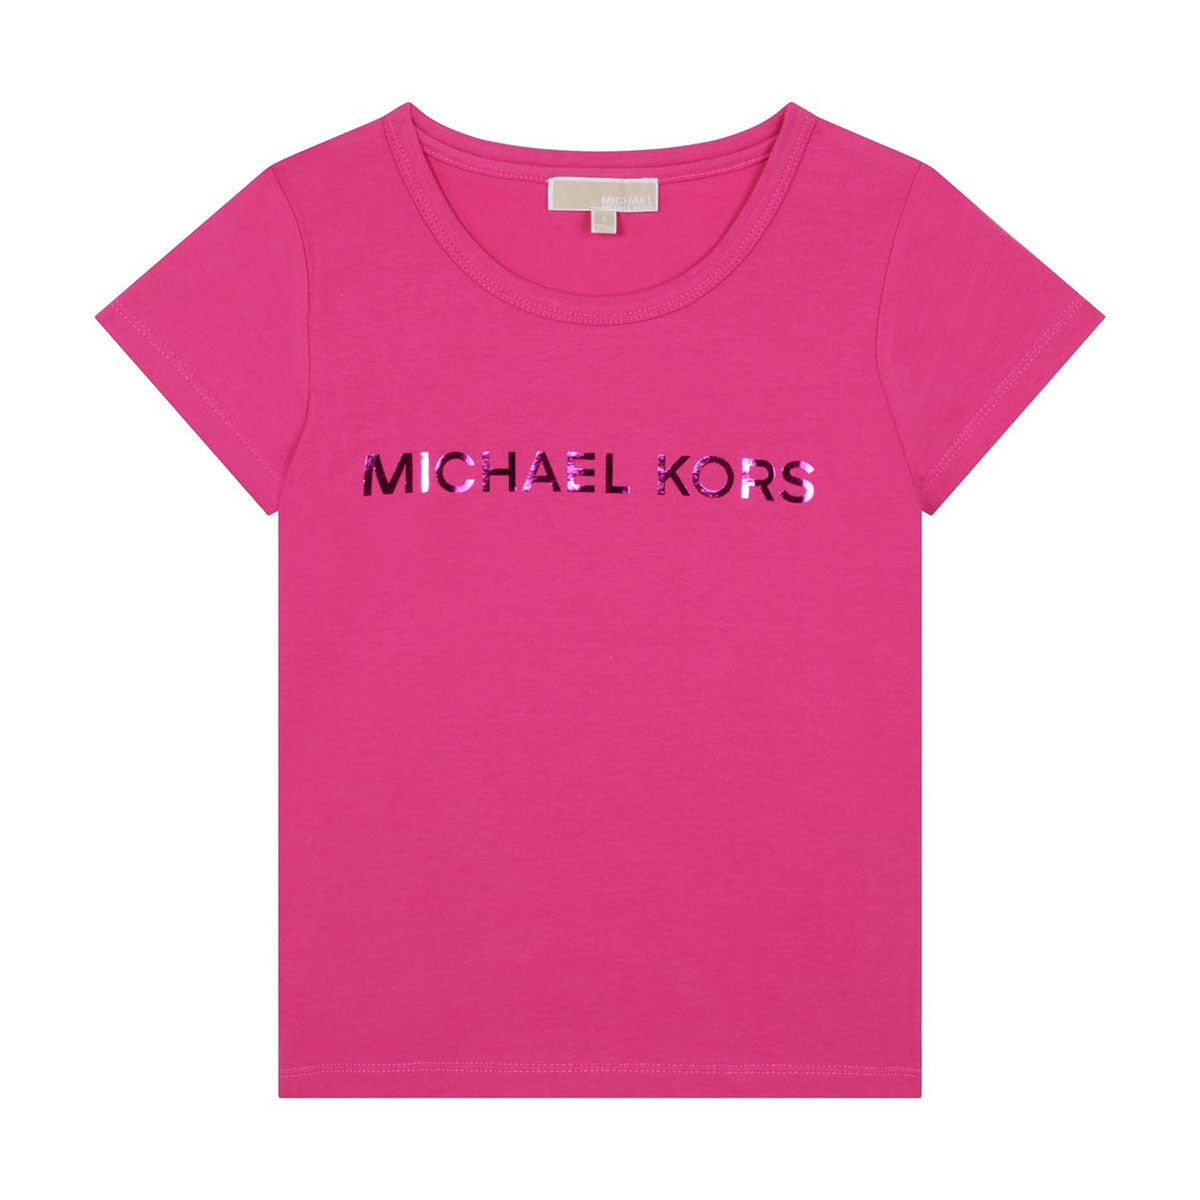 חולצת טי שרט MICHAEL KORS לוגו מטאלי לילדות